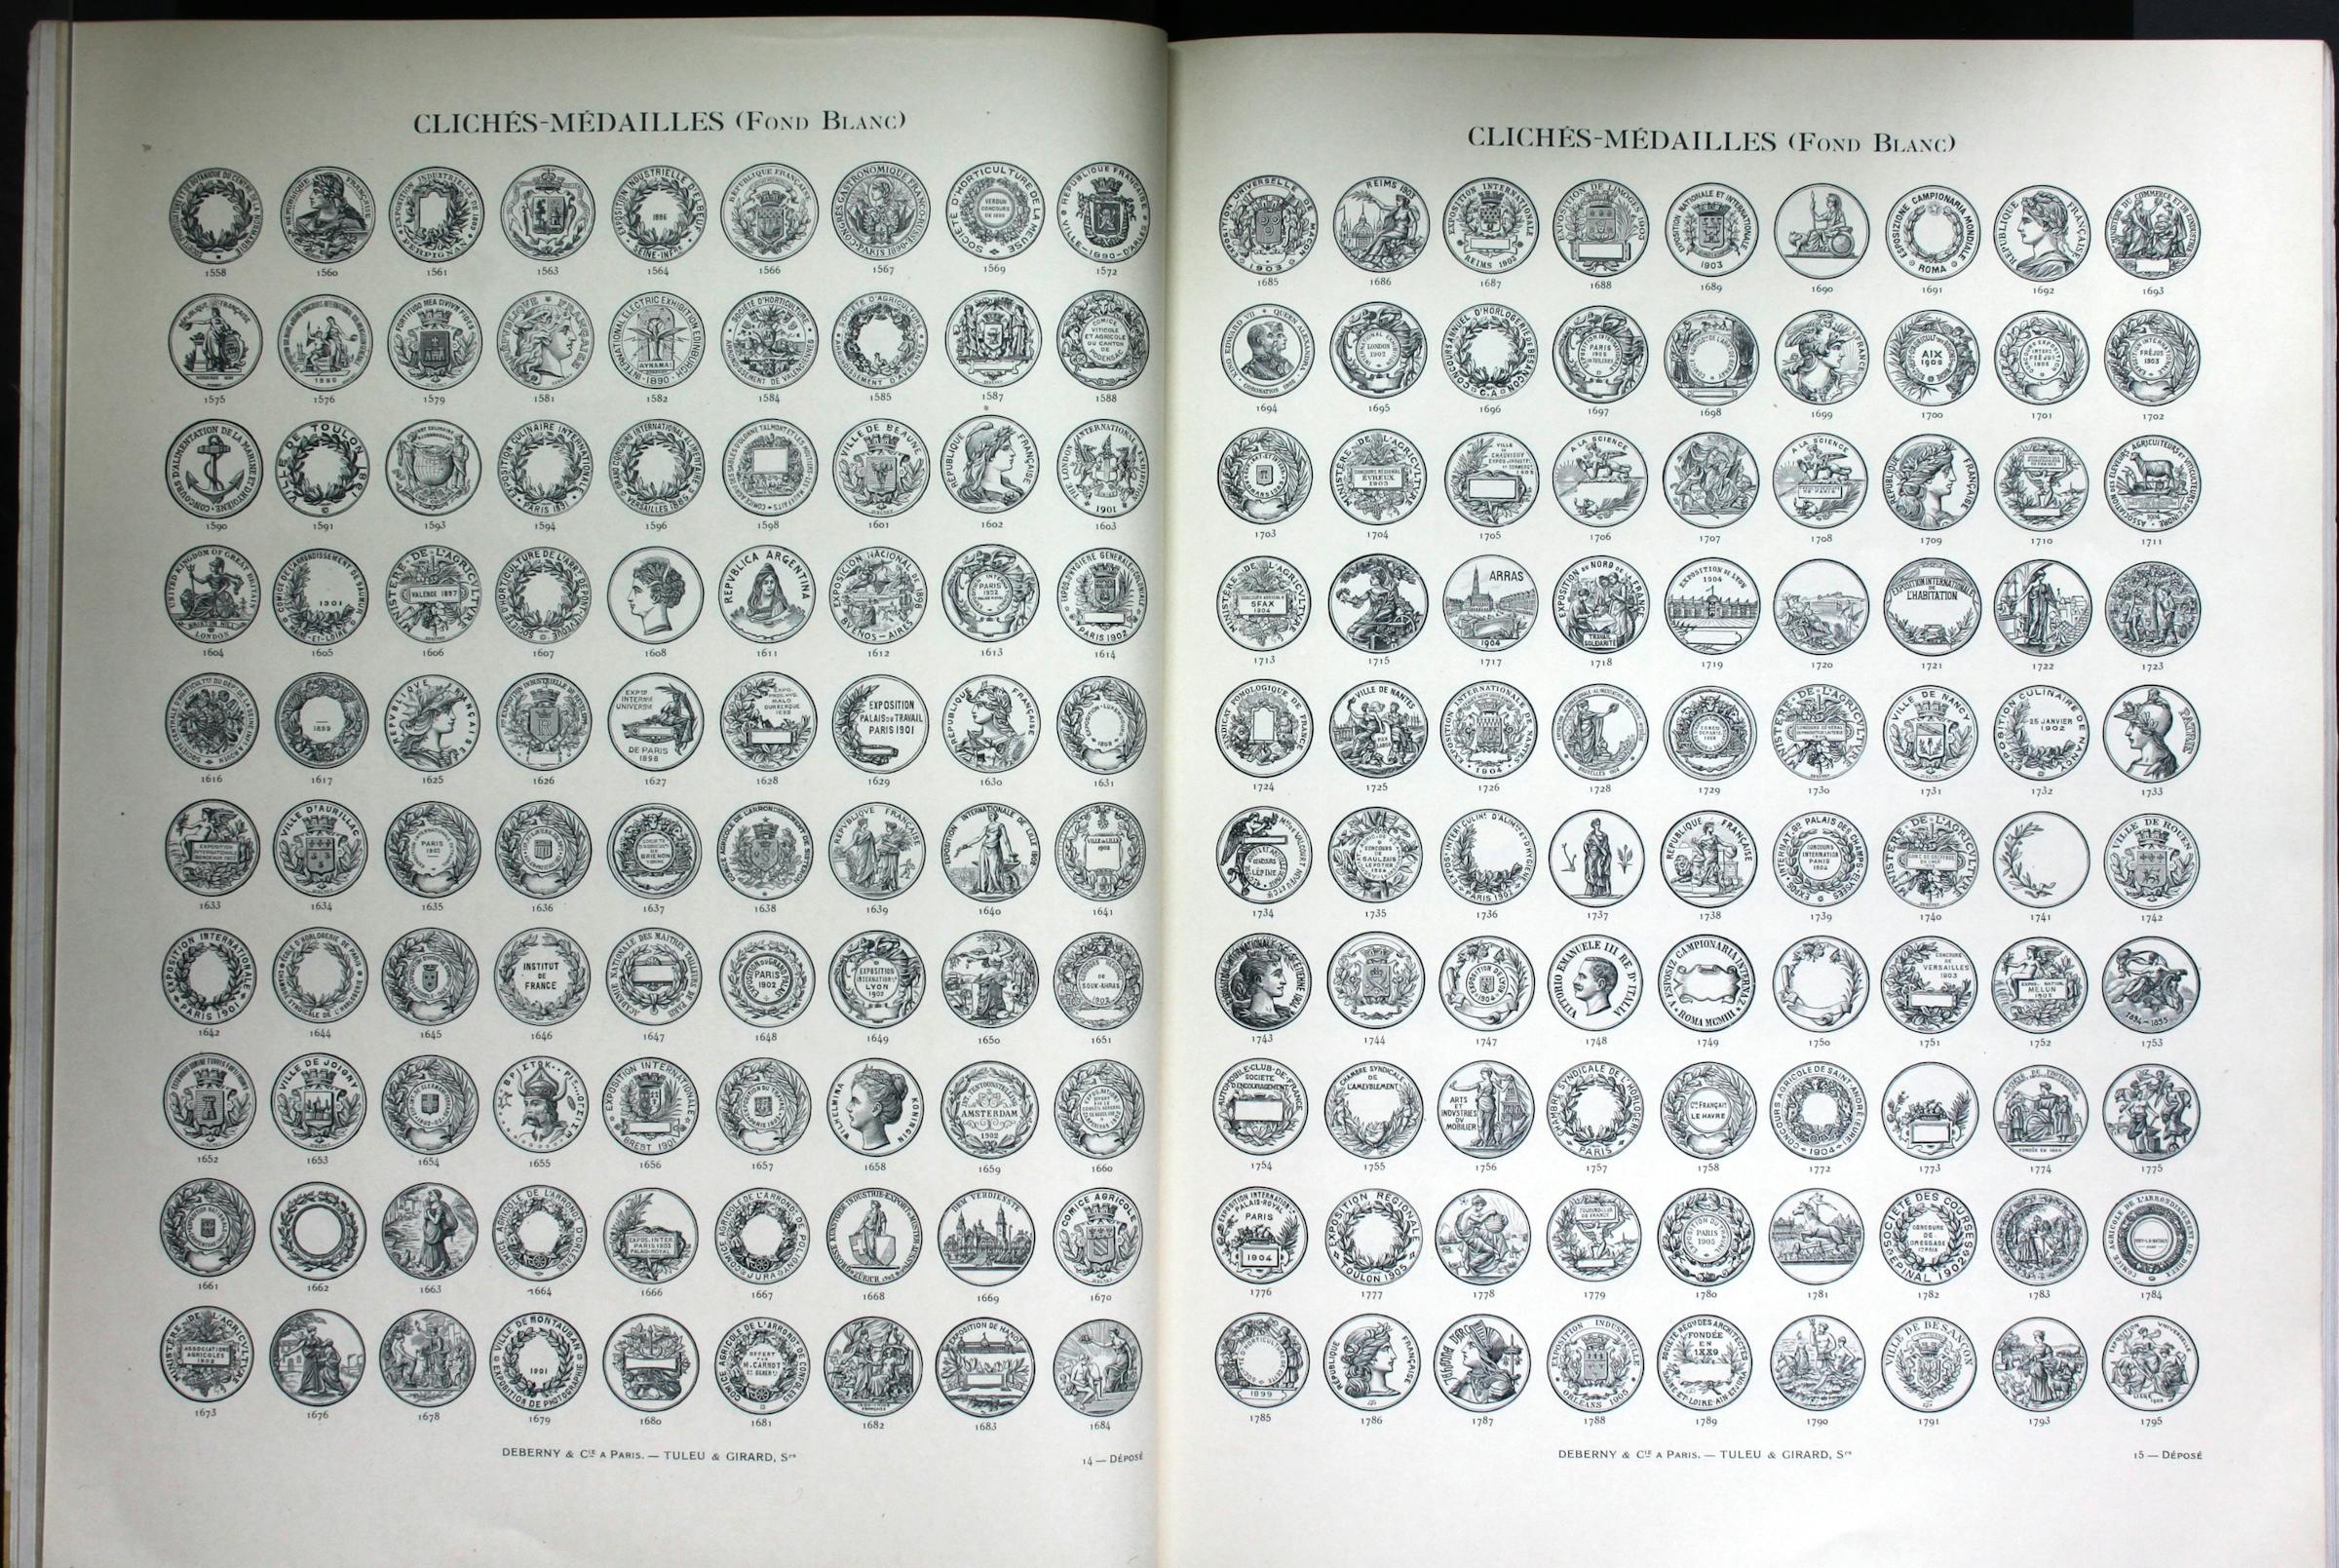 Deberny et Peignot’s “Clichés et gravures”, 1934